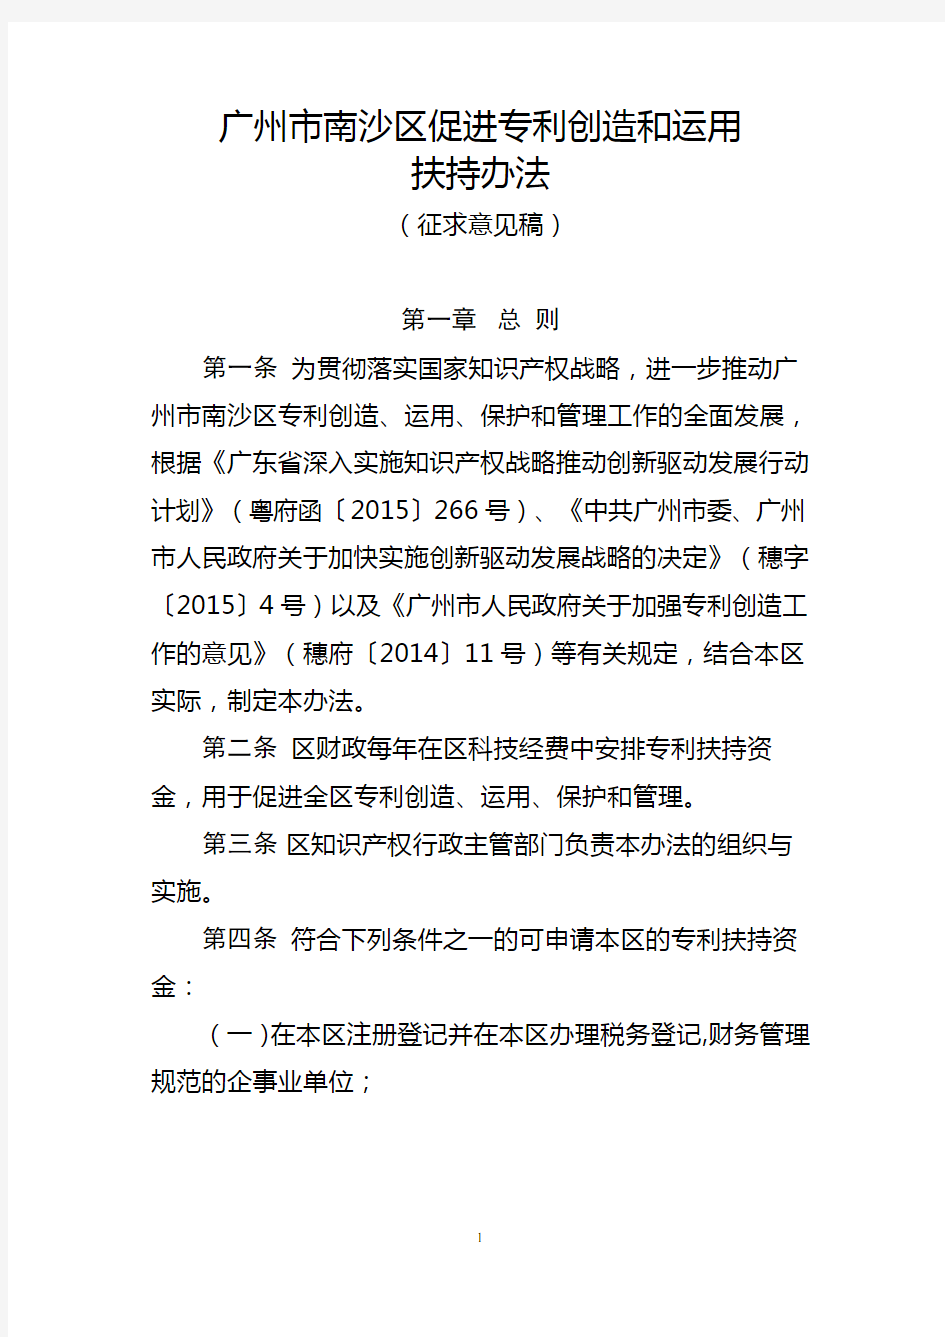 2017-广州市南沙区促进专利创造和运用扶持办法(征求意见稿)